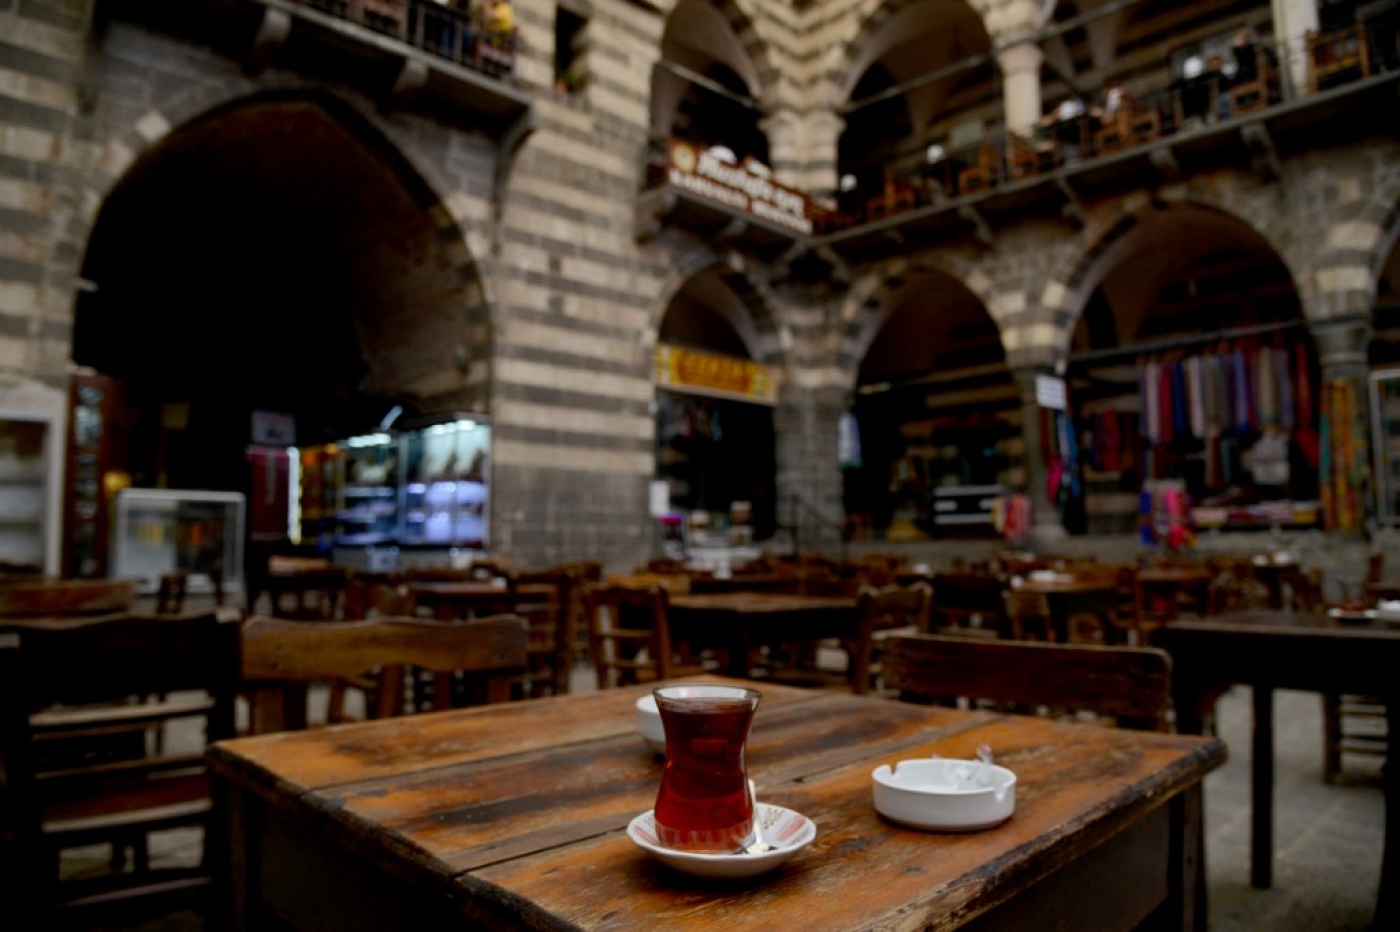  Une tasse de thé sur une table au caravansérail de Hasan Pasa à Diyarbakir, dans le sud-est de la Turquie (AFP/Ilyas Akengin)